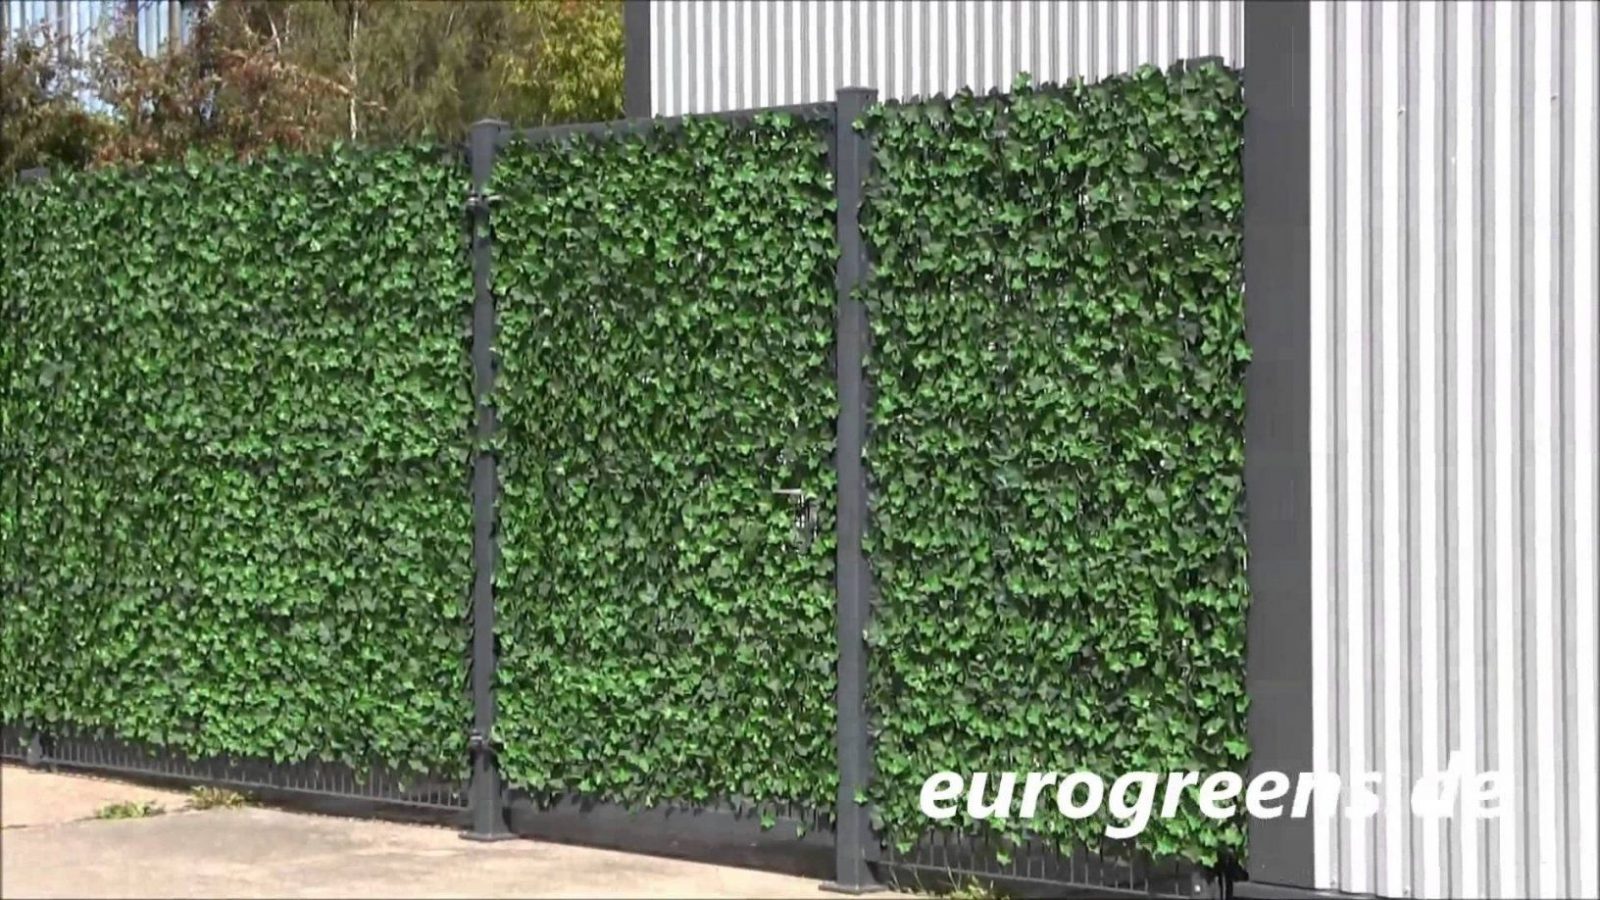 Eurogreens Kunstpflanzen Efeuhecke  Youtube von Efeu Sichtschutz Selber Machen Photo